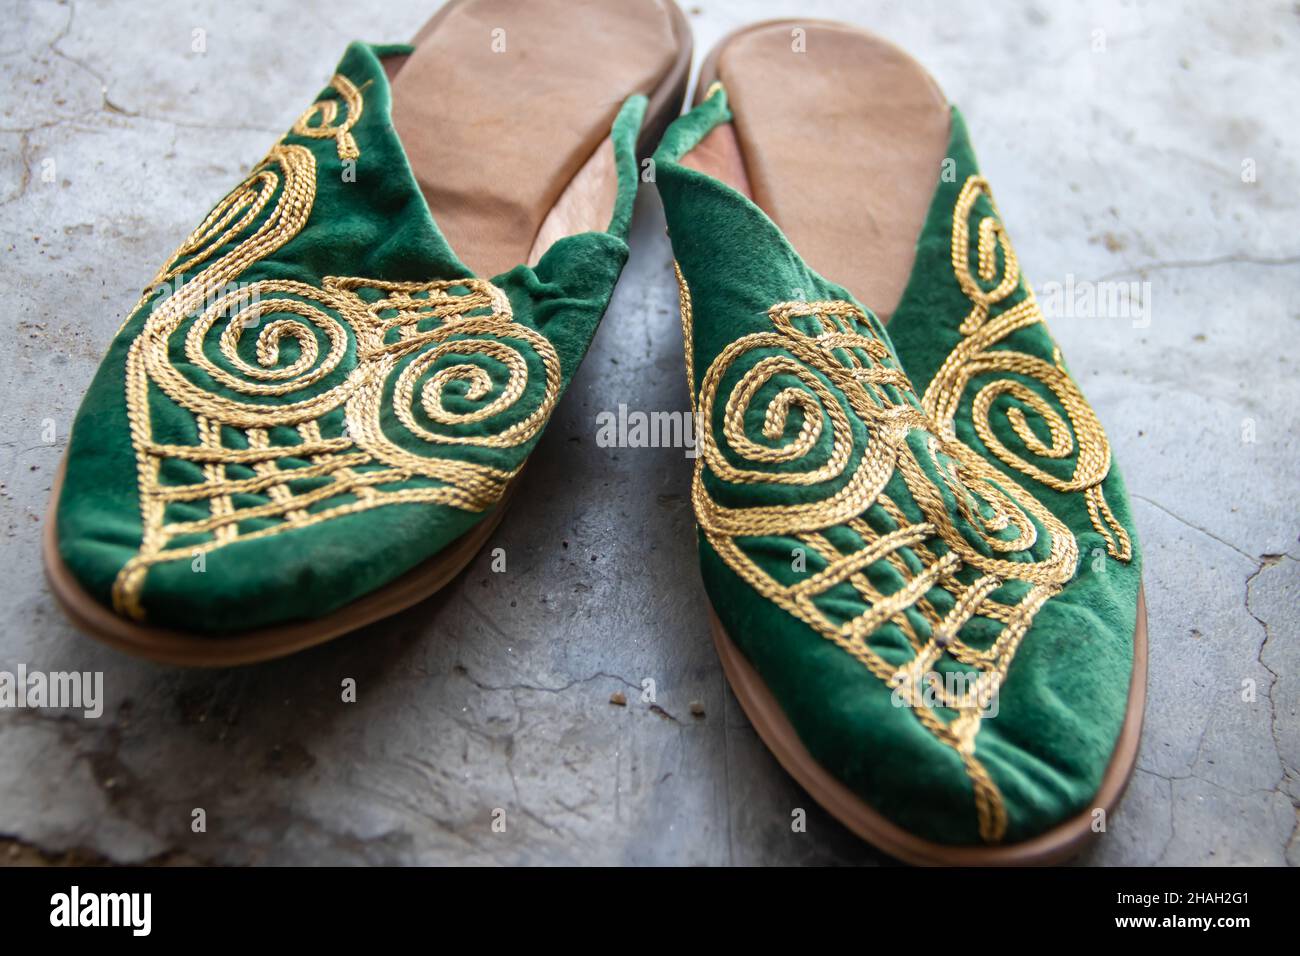 Handgemachte bunte Schuhe im arabischen Stil mit schönen dekorativen Ornamenten, zum Verkauf im traditionellen Straßenmarkt-Basar oder Suk Stockfoto